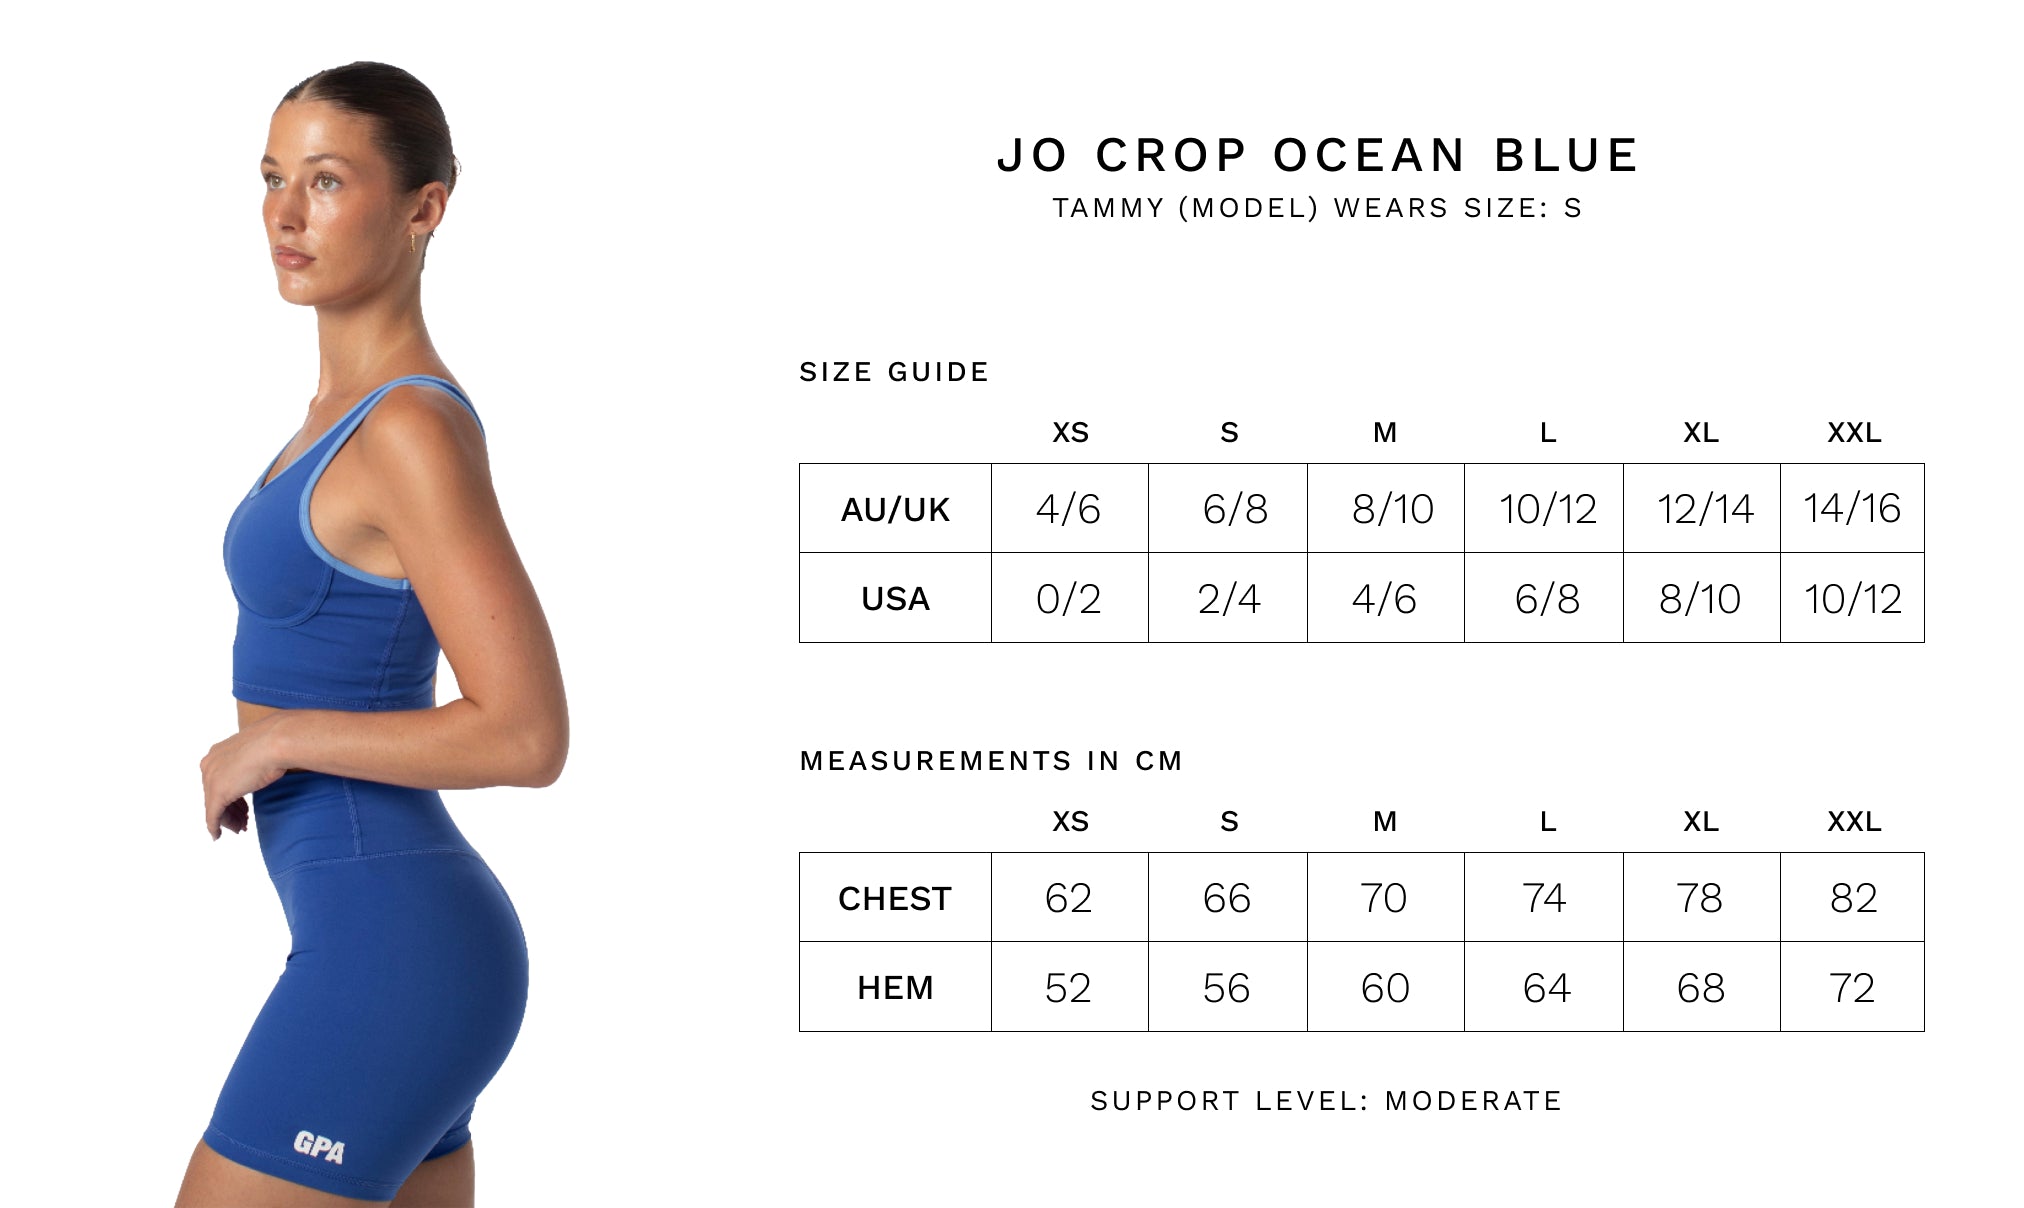 JO CROP - Size Guide